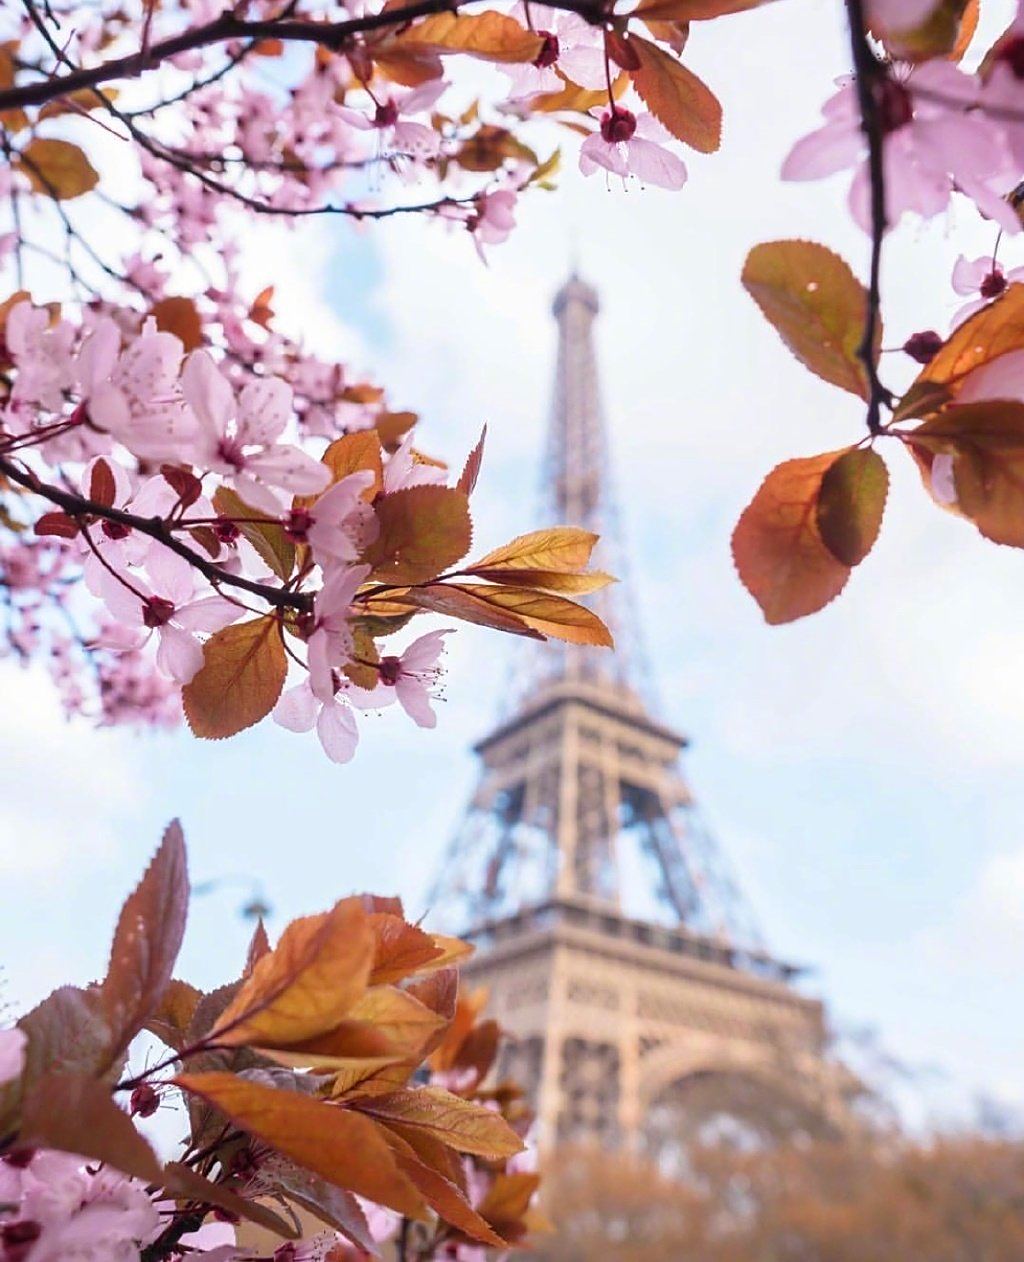 巴黎的春天景色特别的美丽